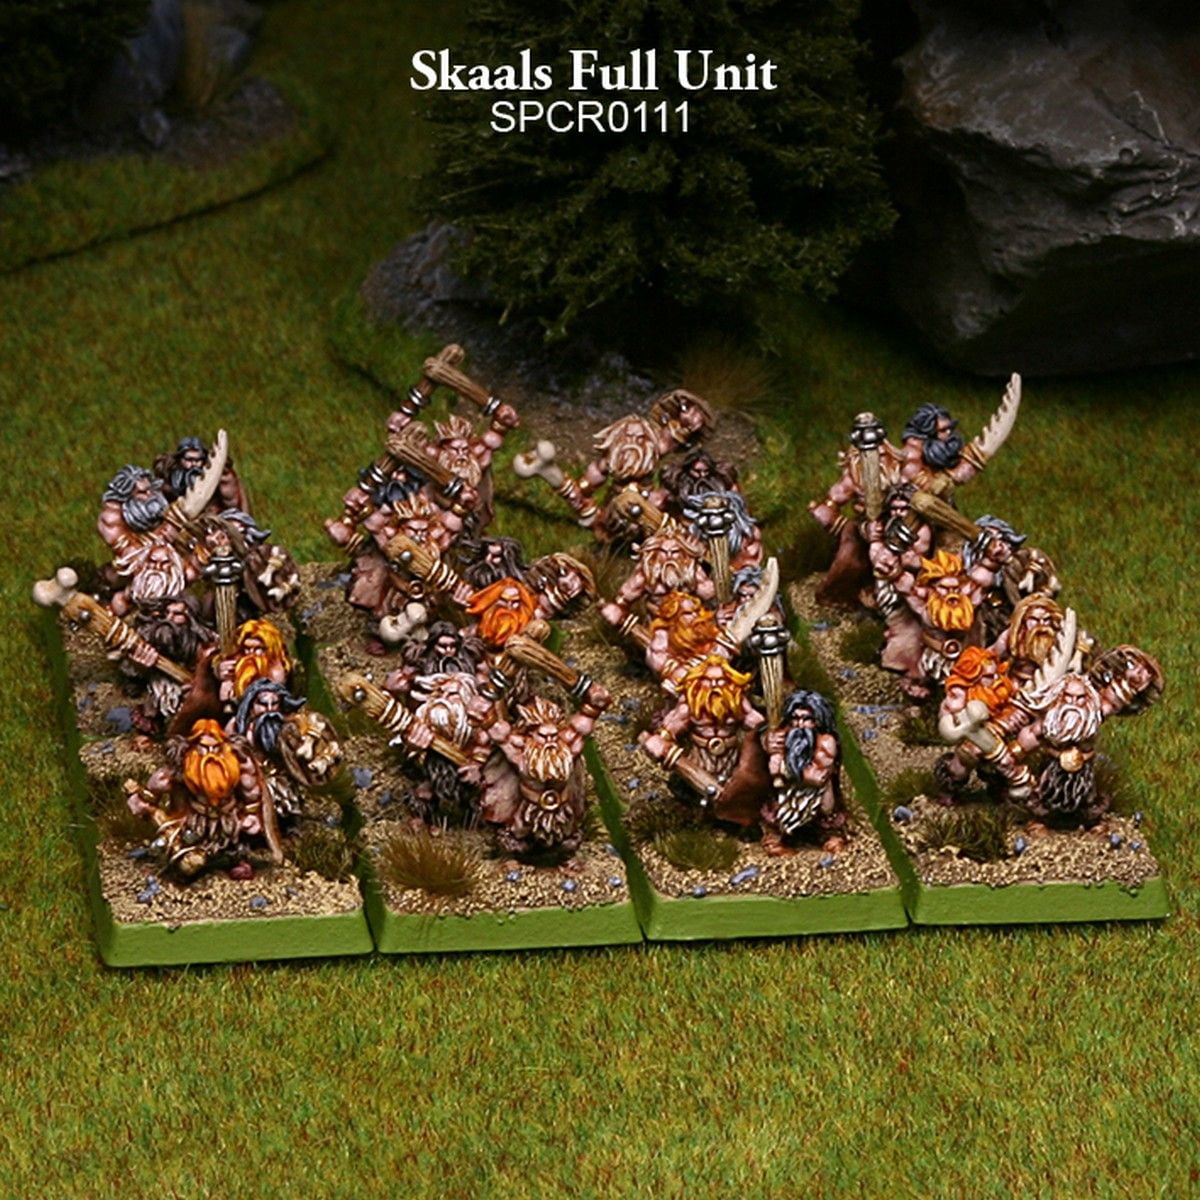 Skaals Full Unit